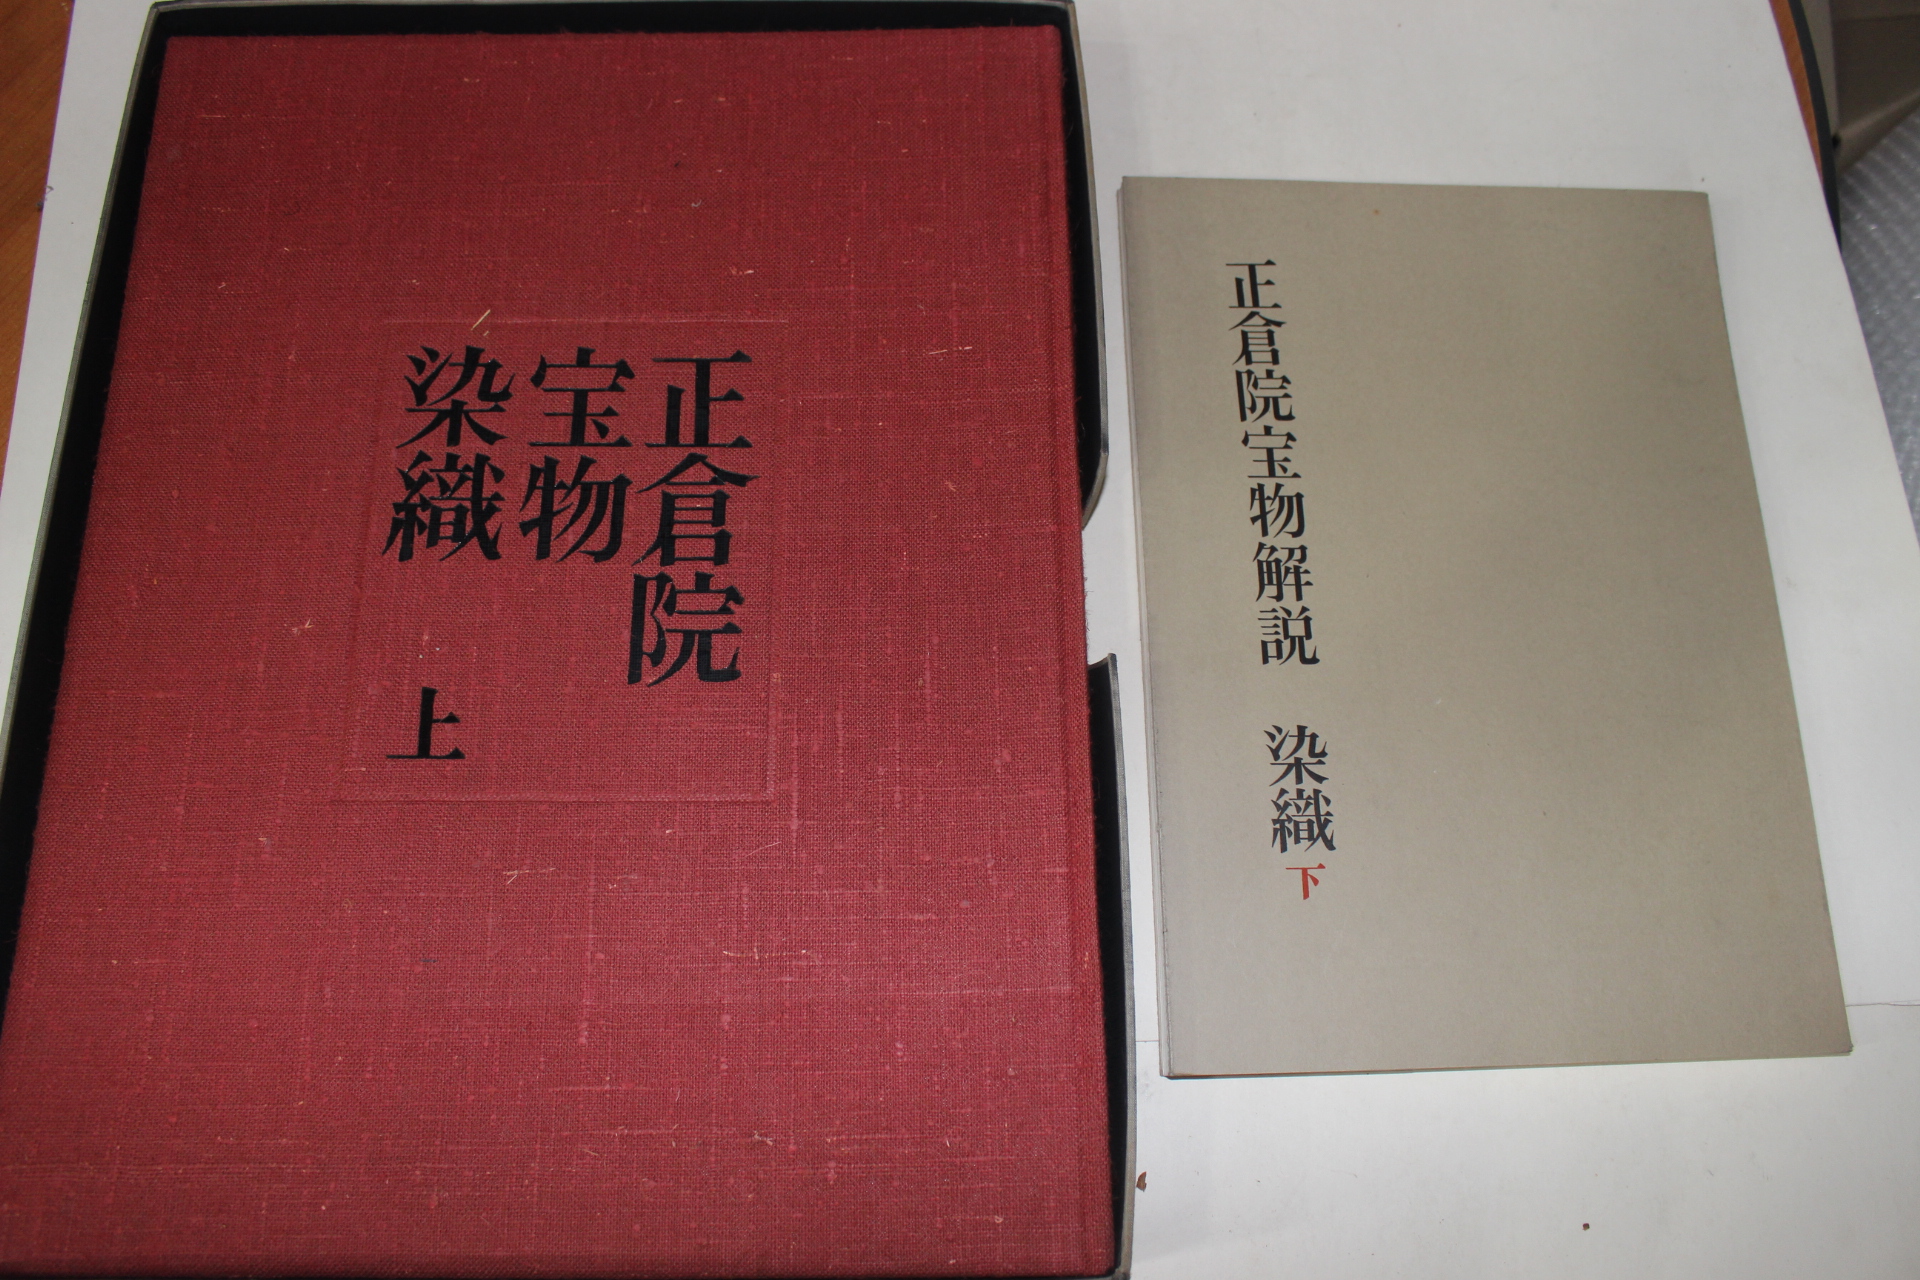 1963년(소화38년) 정창원보물(正倉院寶物) 염직(染織)상하 2책완질